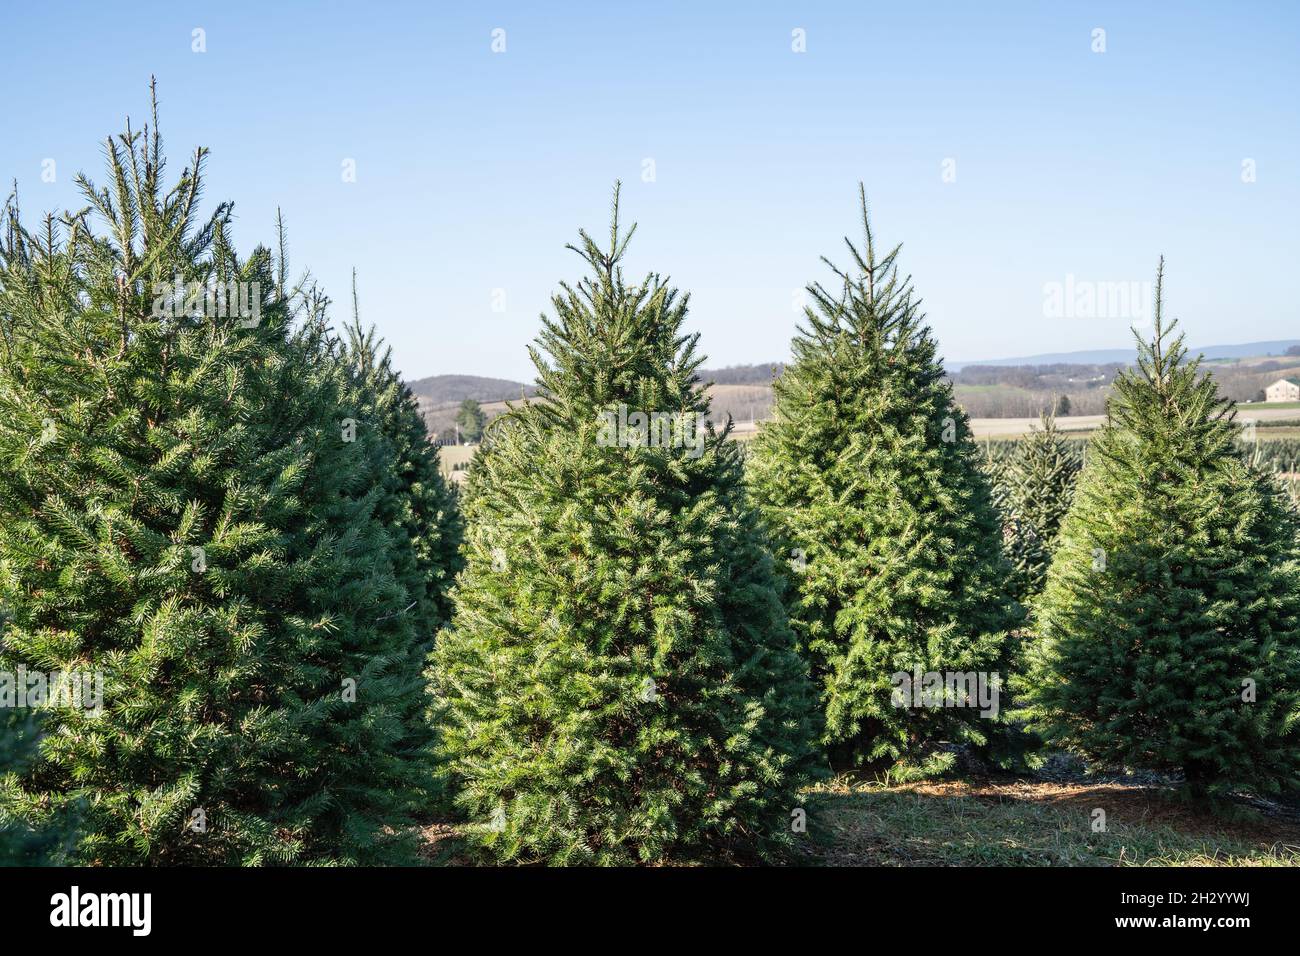 Christmas trees at Pennsylvania tree farm Stock Photo